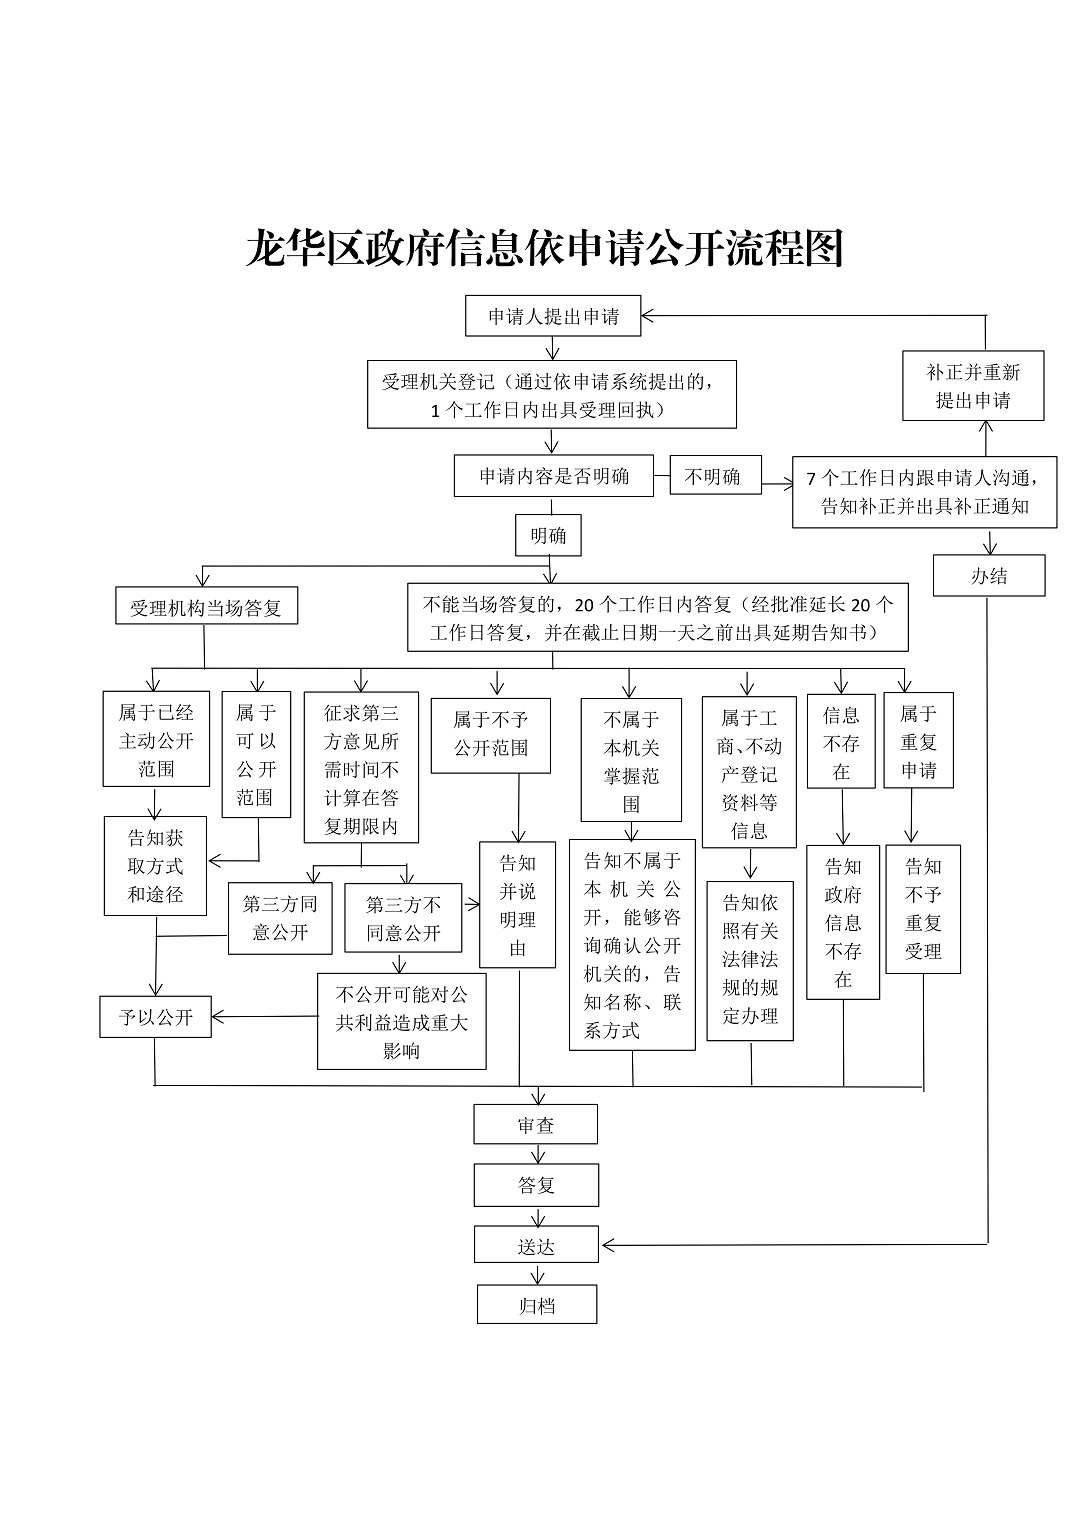 龙华区政府信息依申请公开流程图_00.jpg